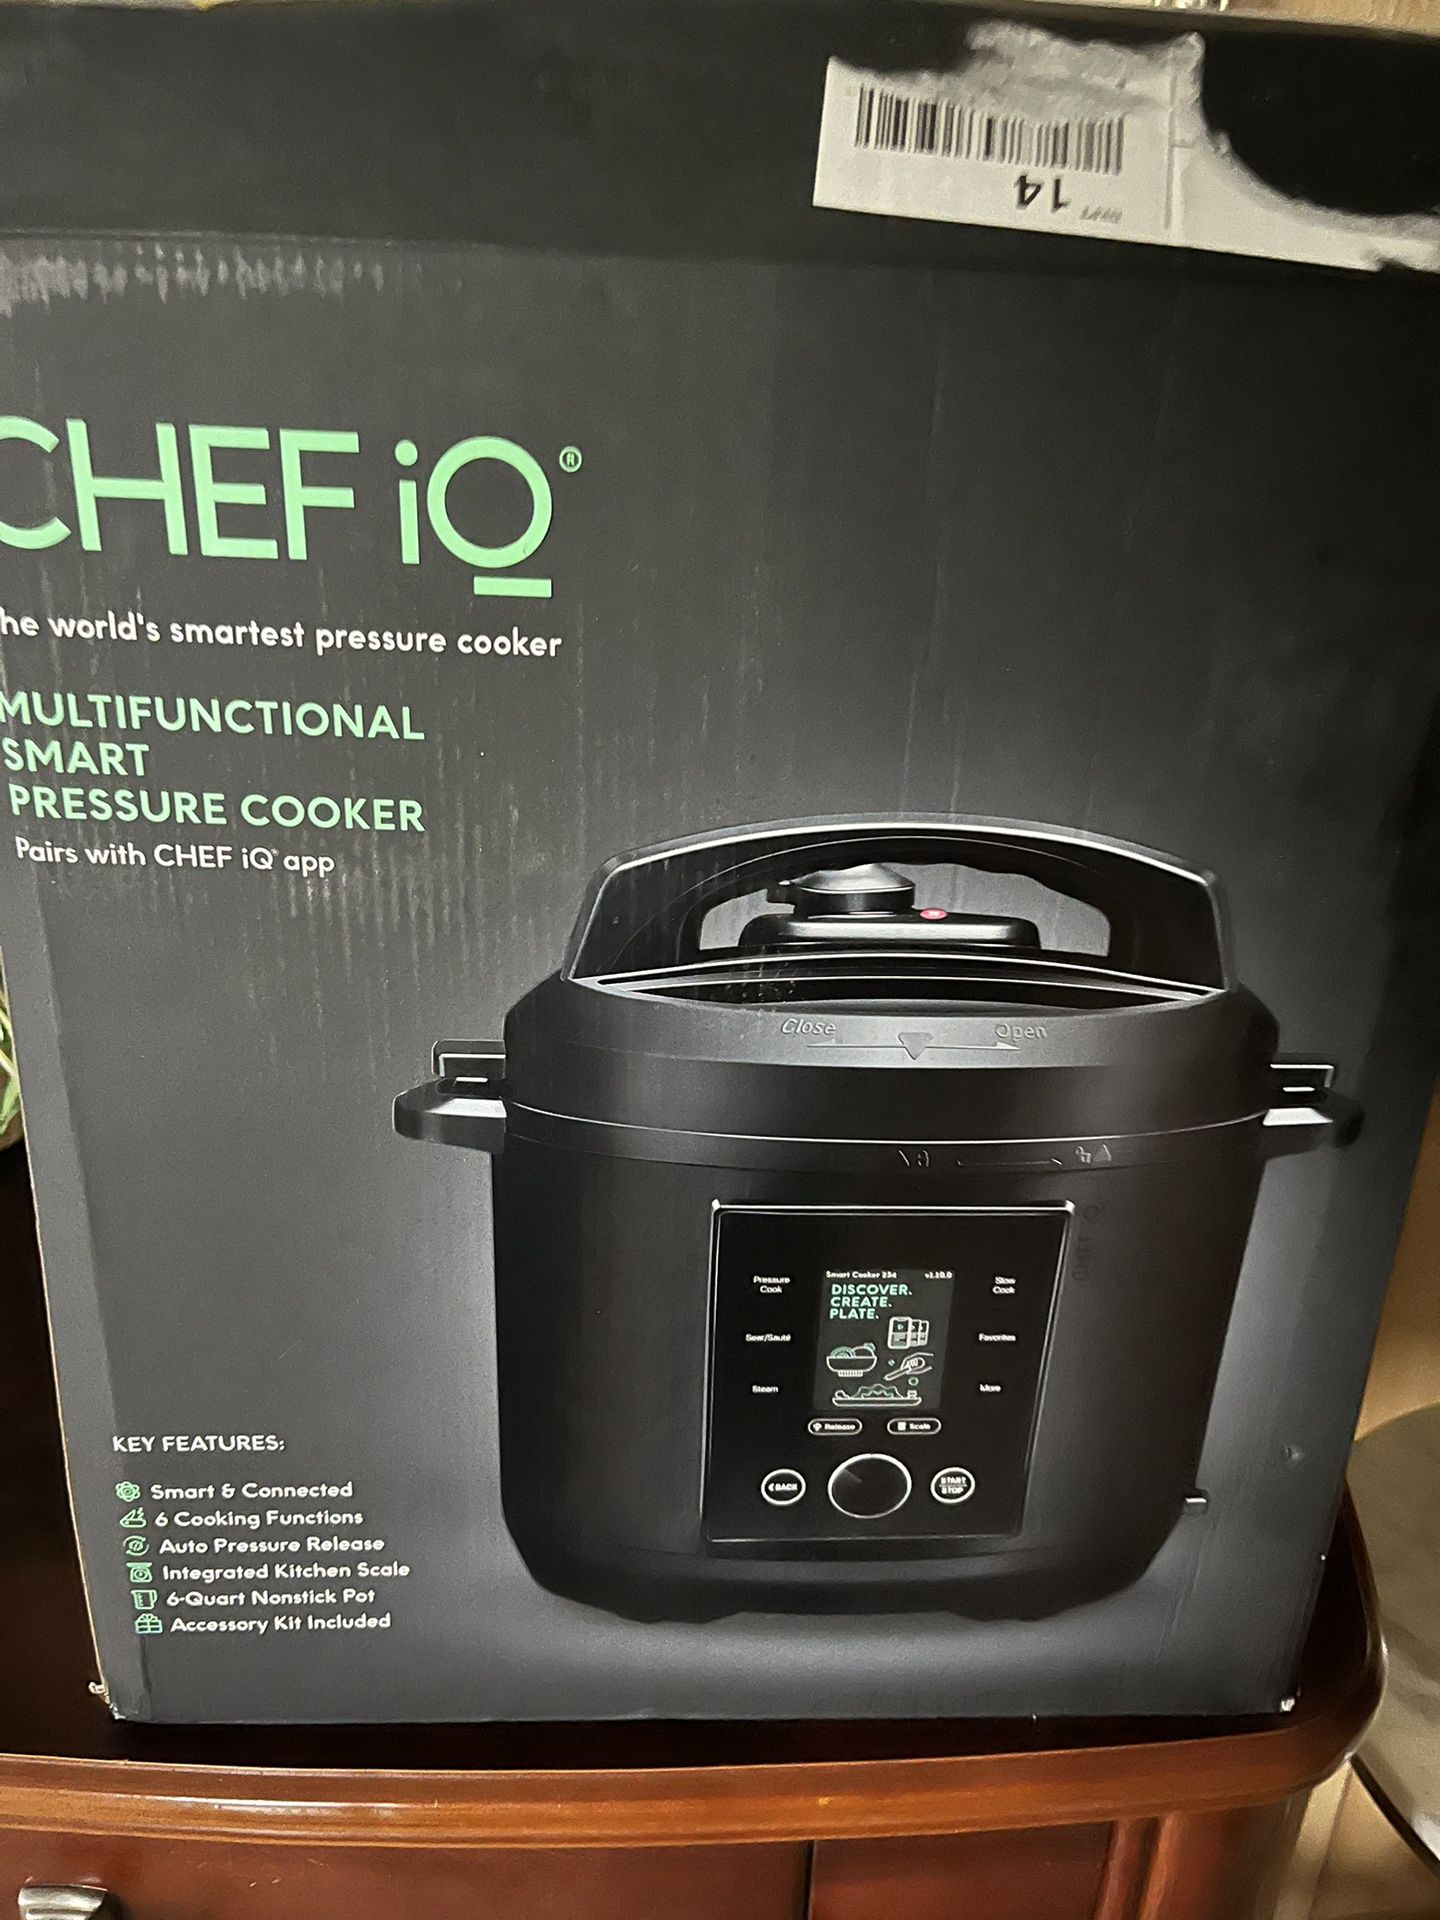 CHEF iQ pressure cooker sale:  takes 25 percent off cooker